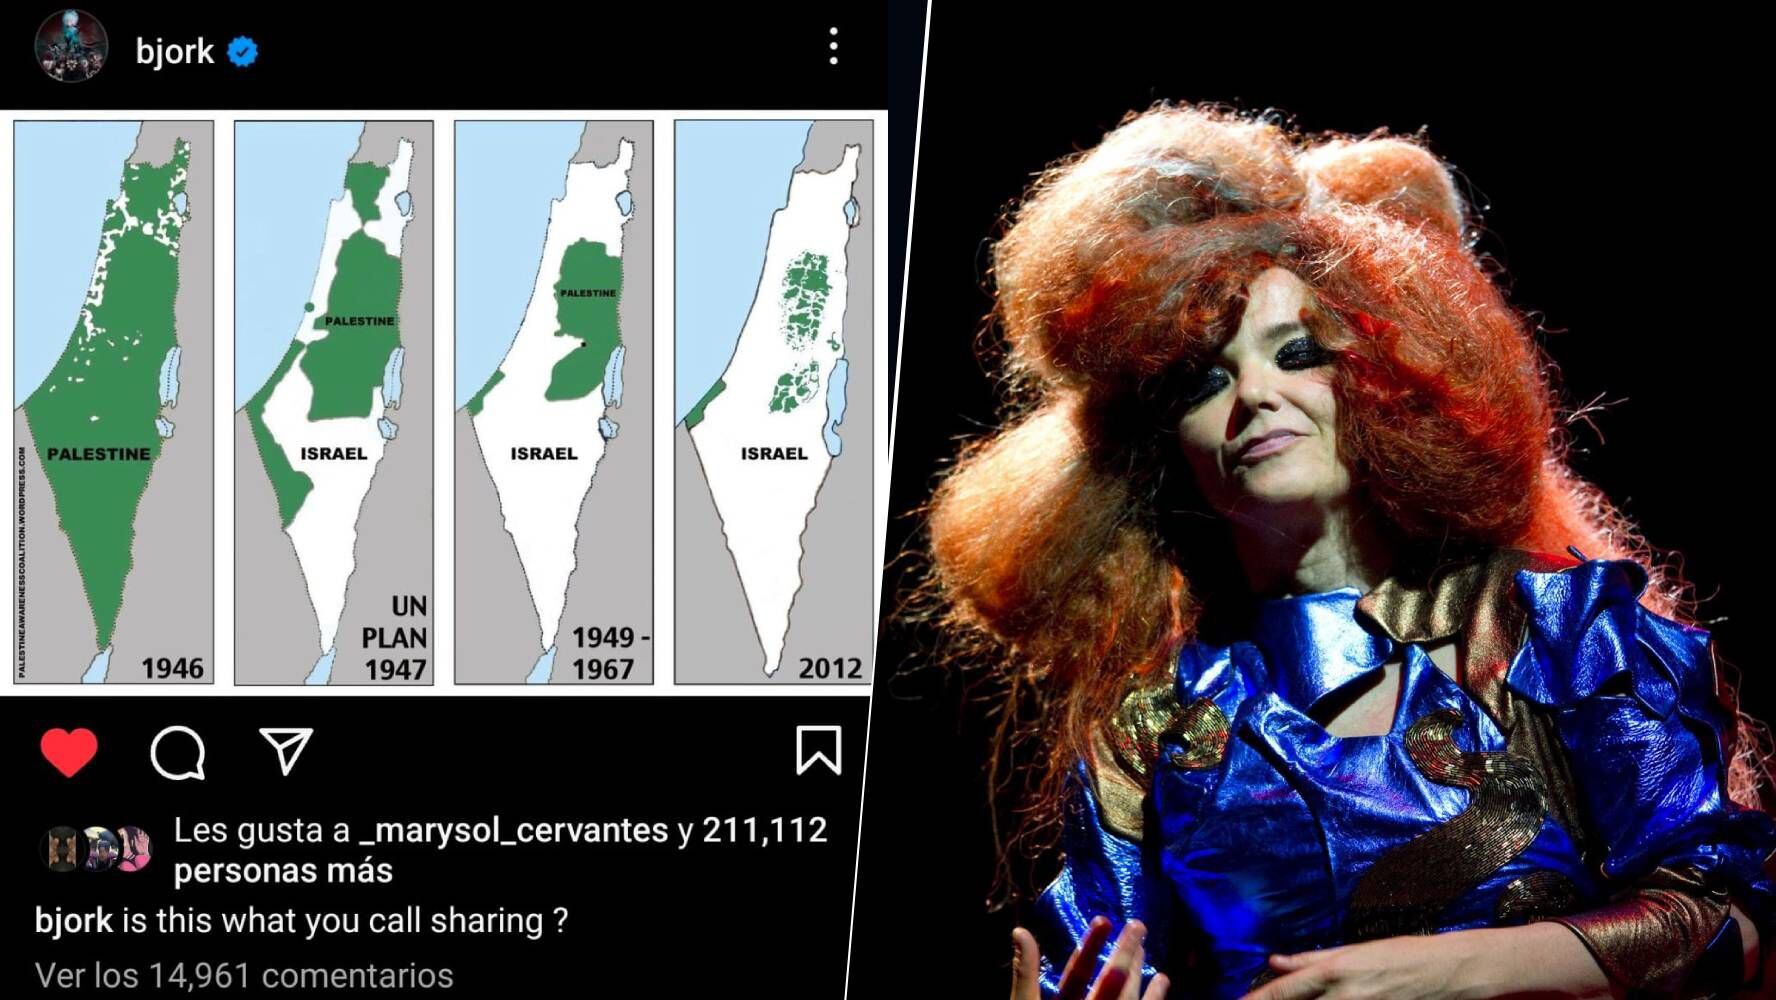 Björk, la cantante islandesa, ha emitido un comentario sobre la situación en Palestina.